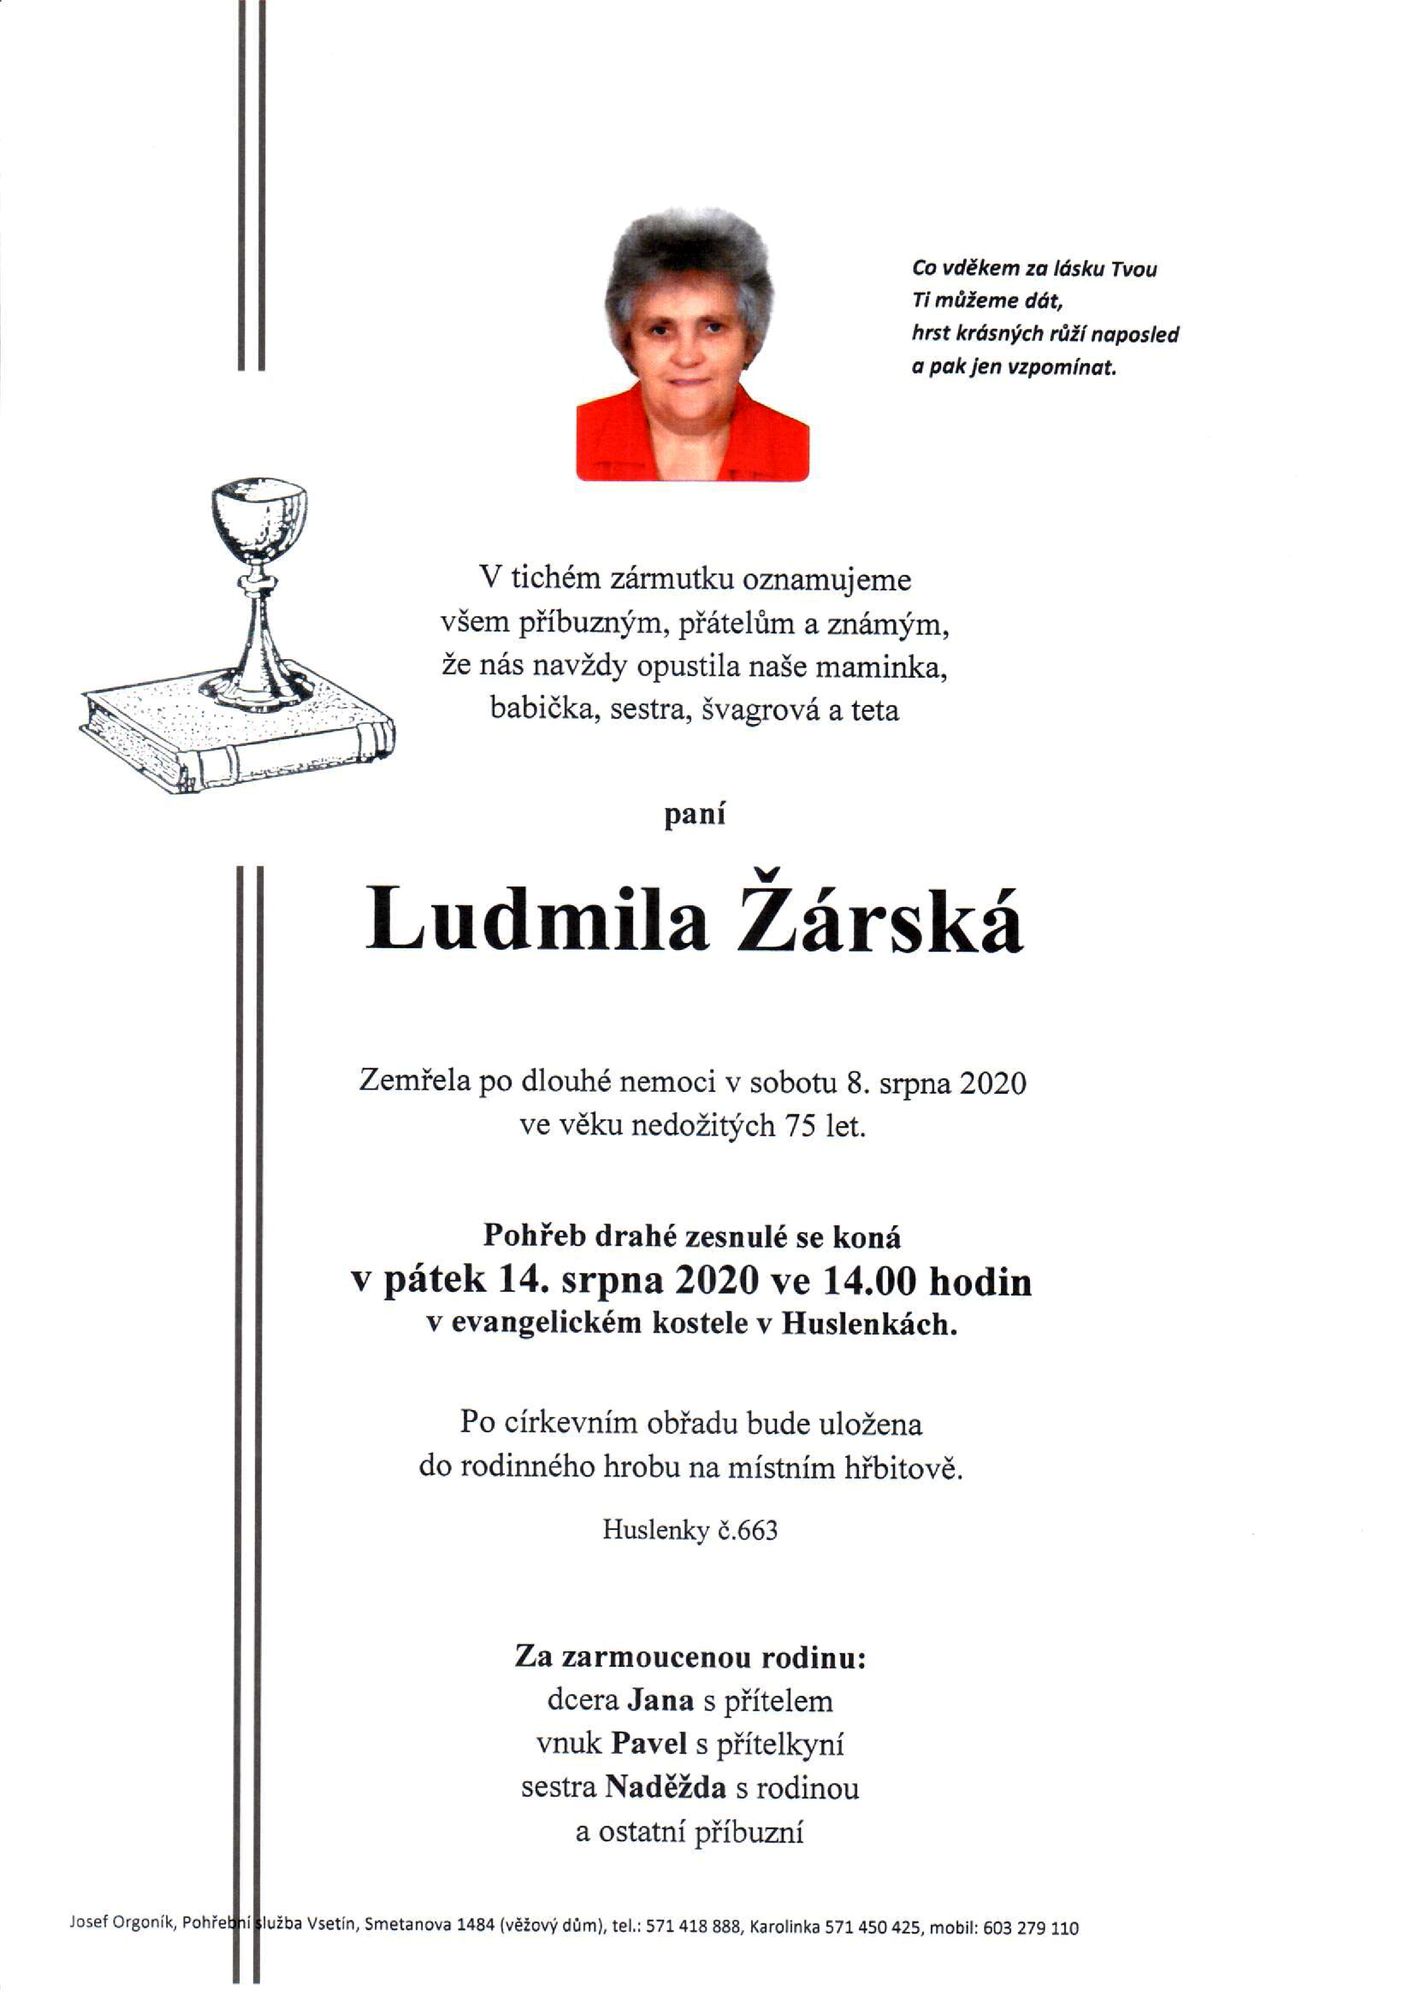 Ludmila Žárská